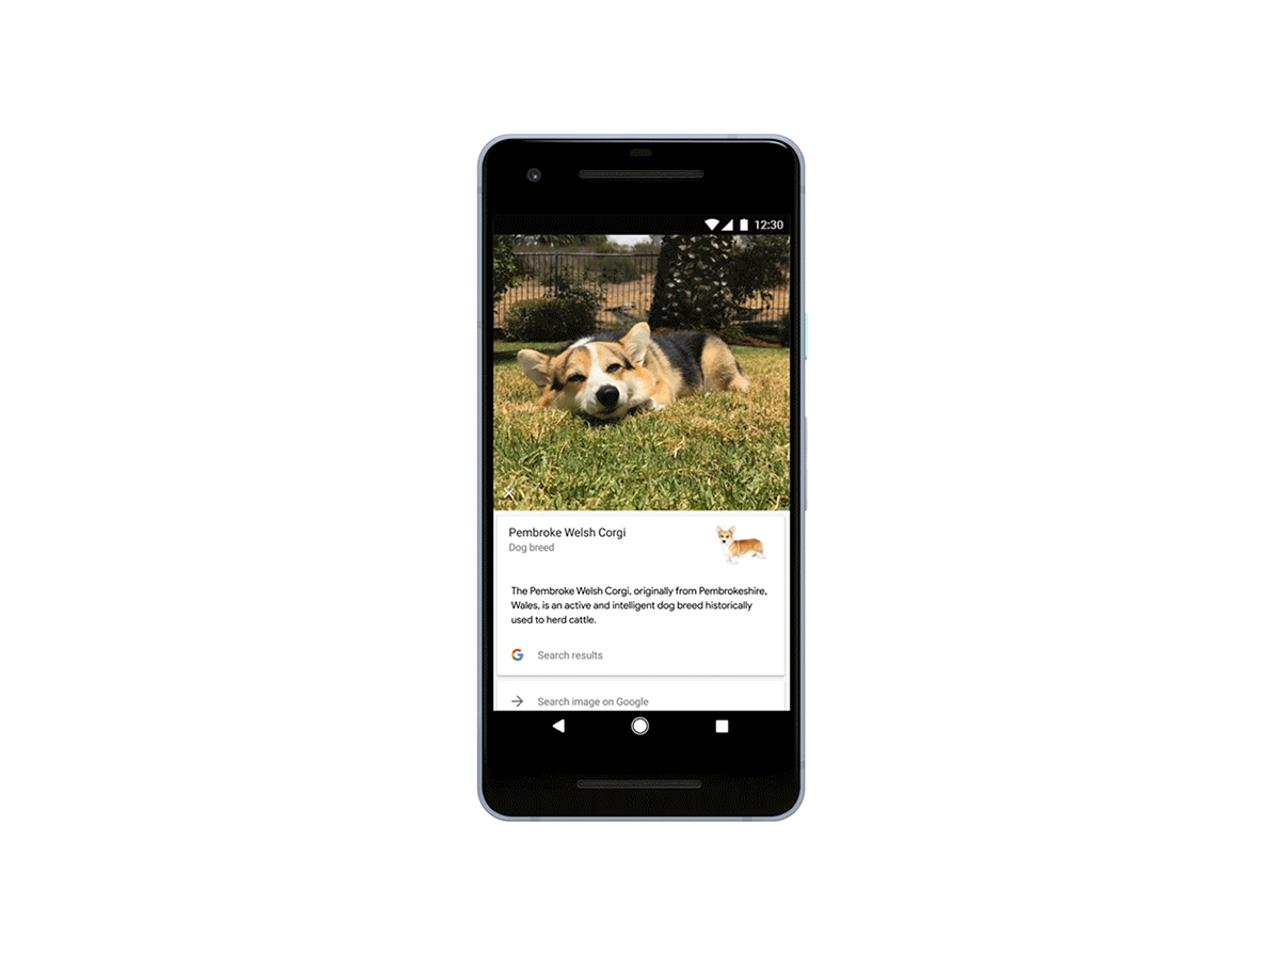 Googleの画像認識技術、人間の次は、犬を見分けるように